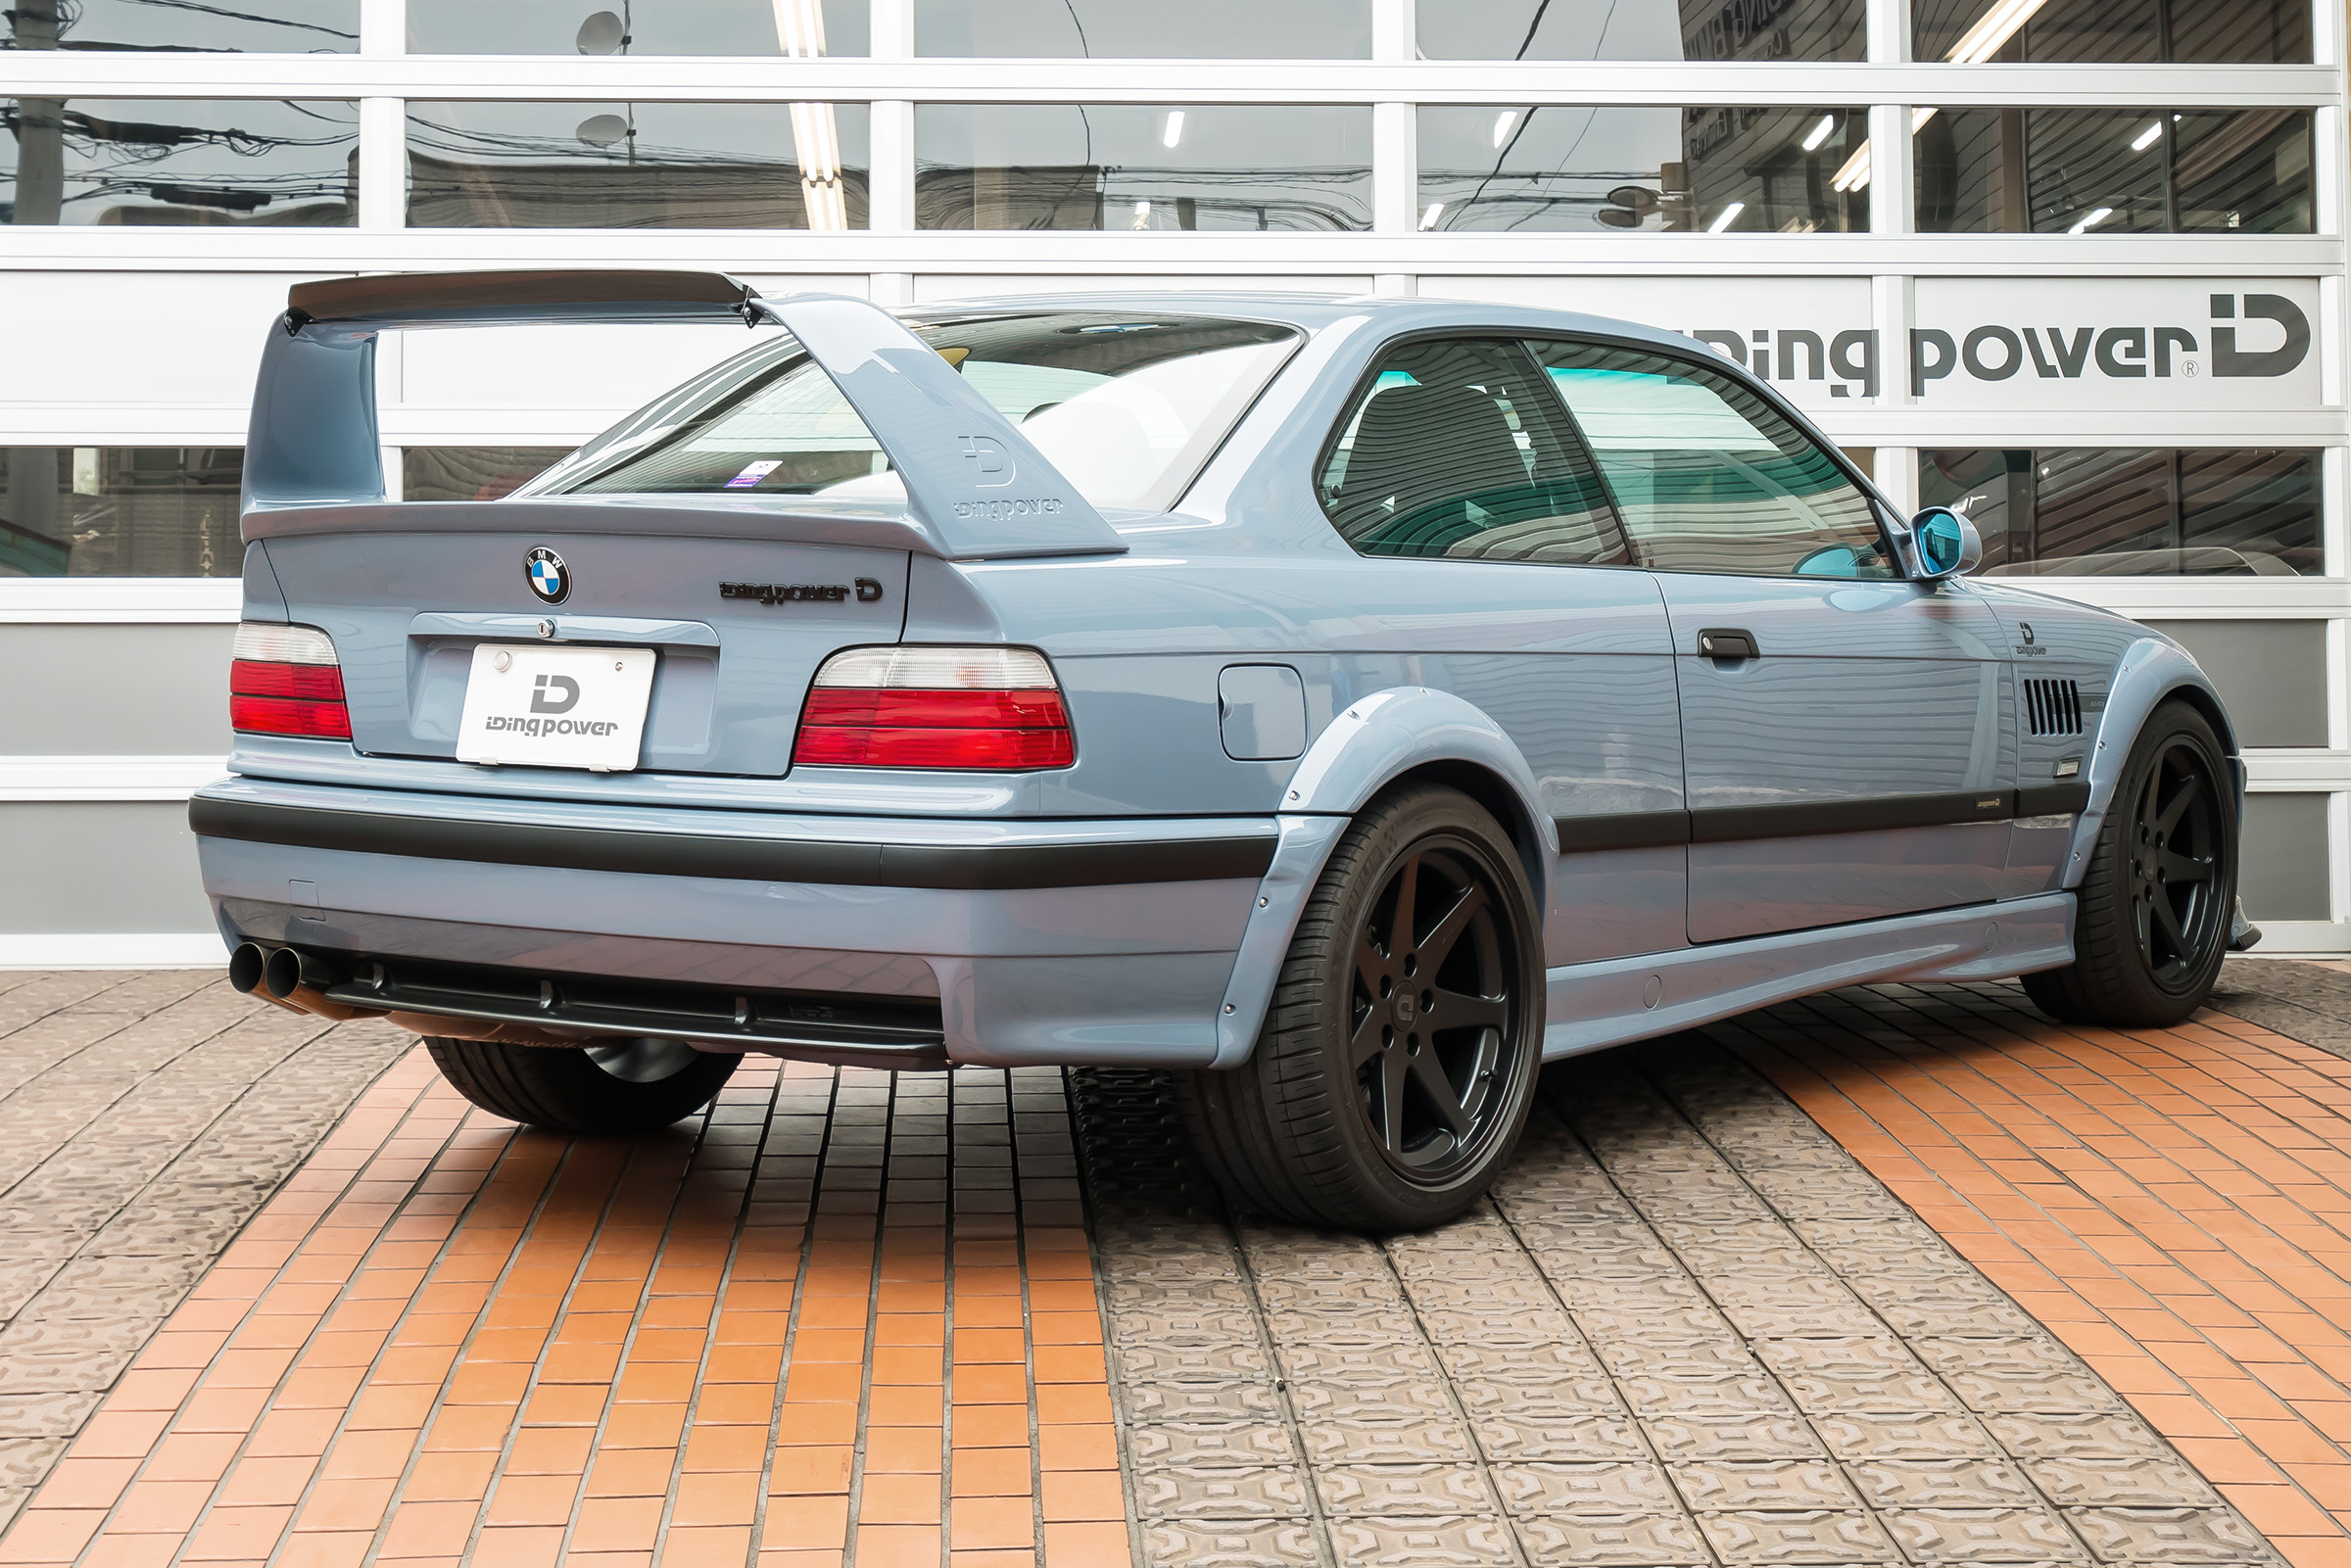 IDING BMW E36 M3 / S3 | Inventory | IDINGPOWER